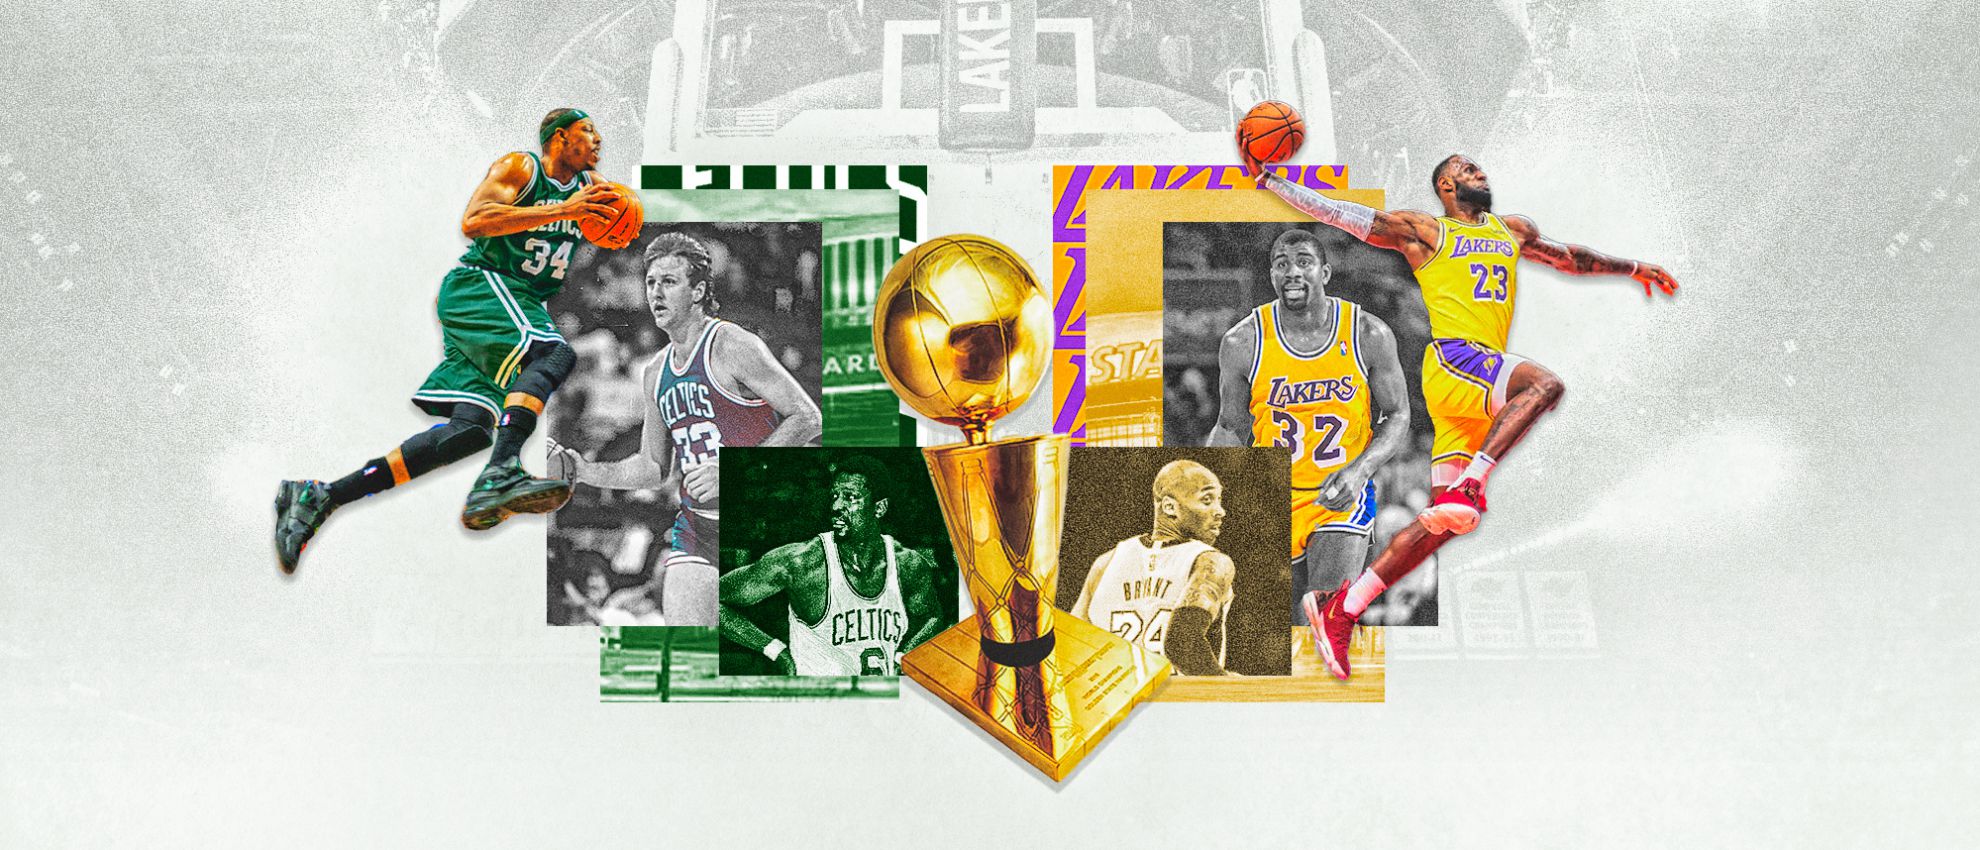 Lakers-Celtics, una guerra eterna por el trono de la NBA